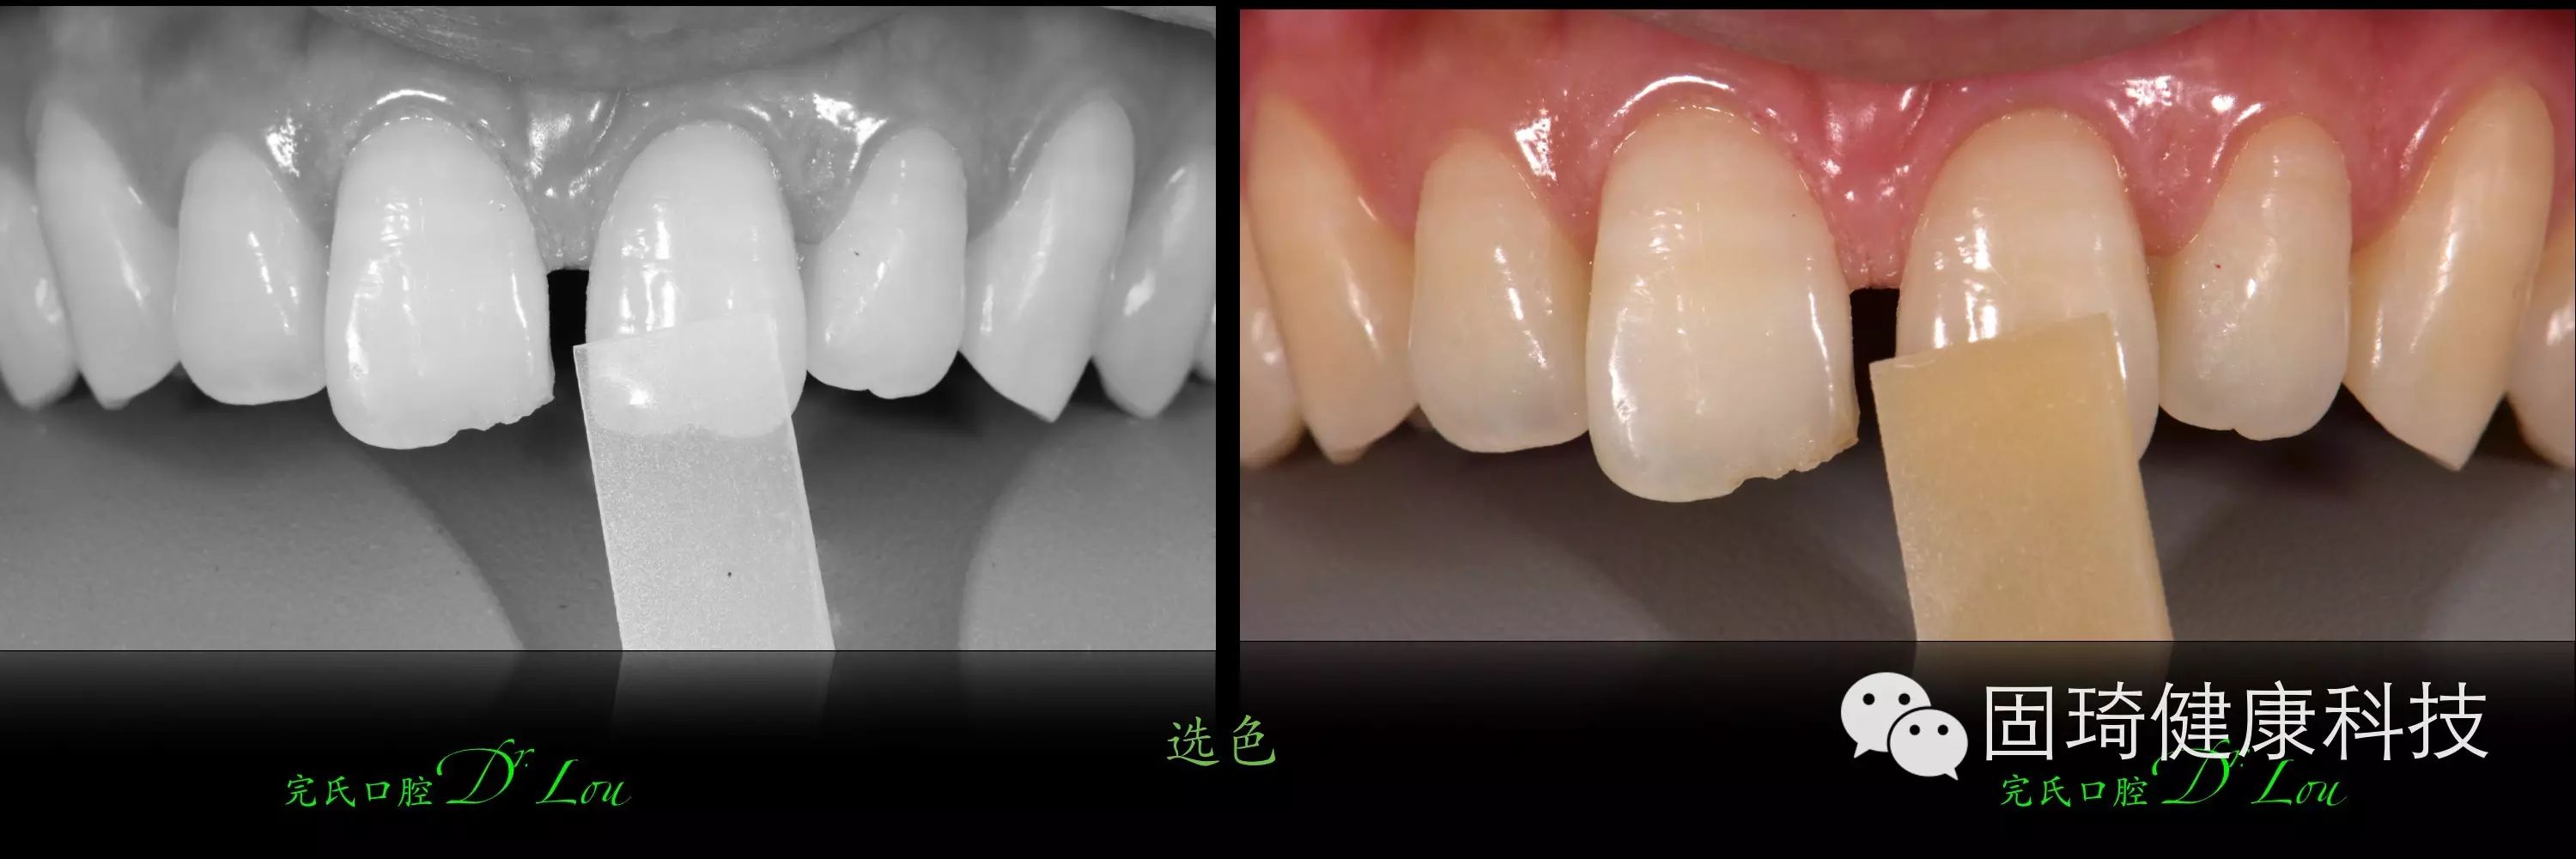 Hibeauty隐秀「牙列间隙／多牙位缺失/正畸种植修复联合矫治」案例分享 - 知乎